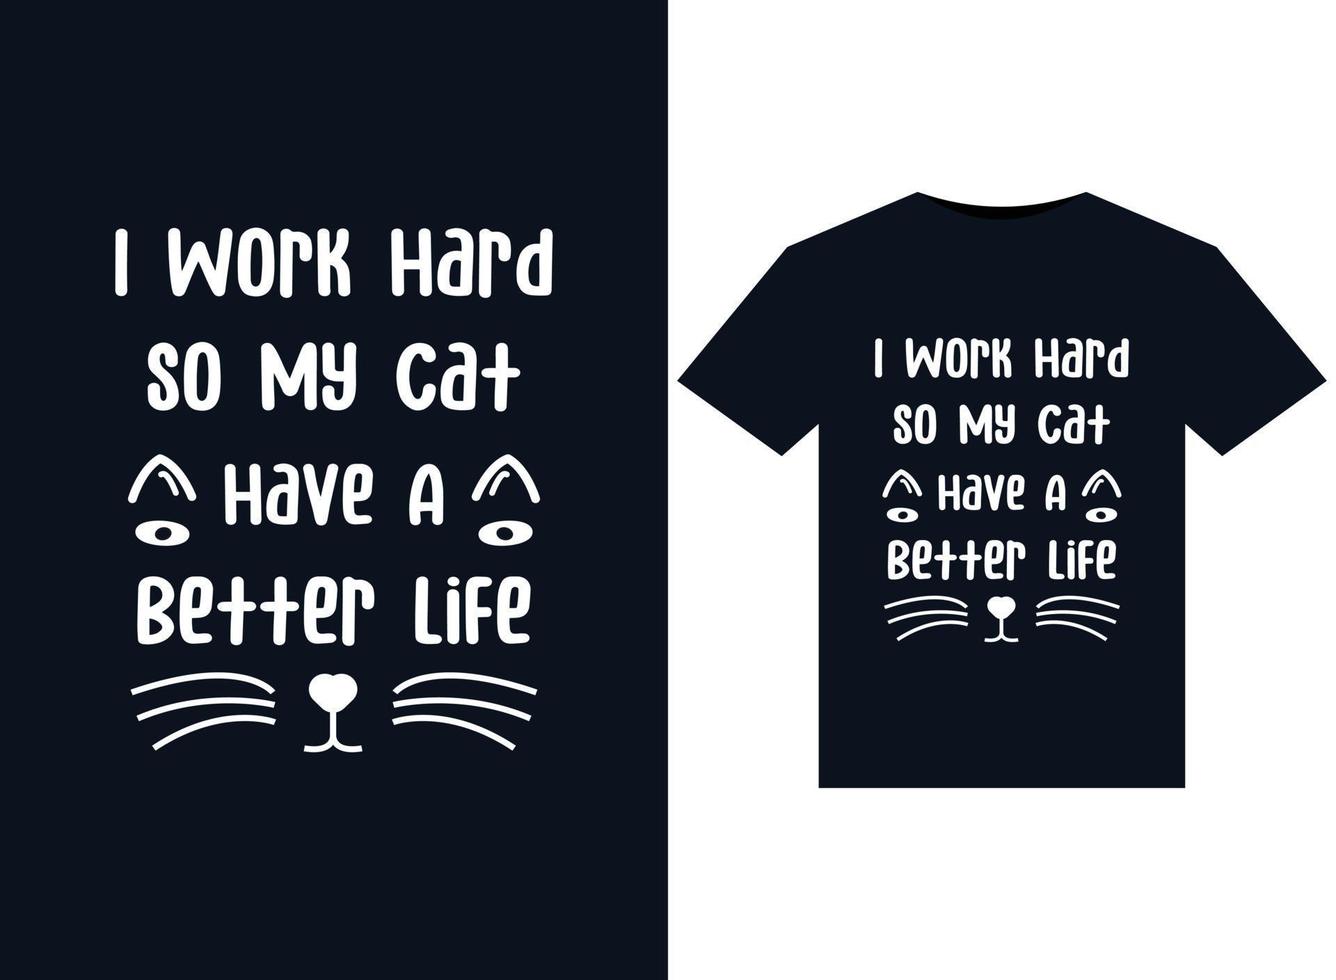 jag arbete hård så min katt kan ha en bättre liv illustrationer för tryckfärdig t-tröjor design vektor